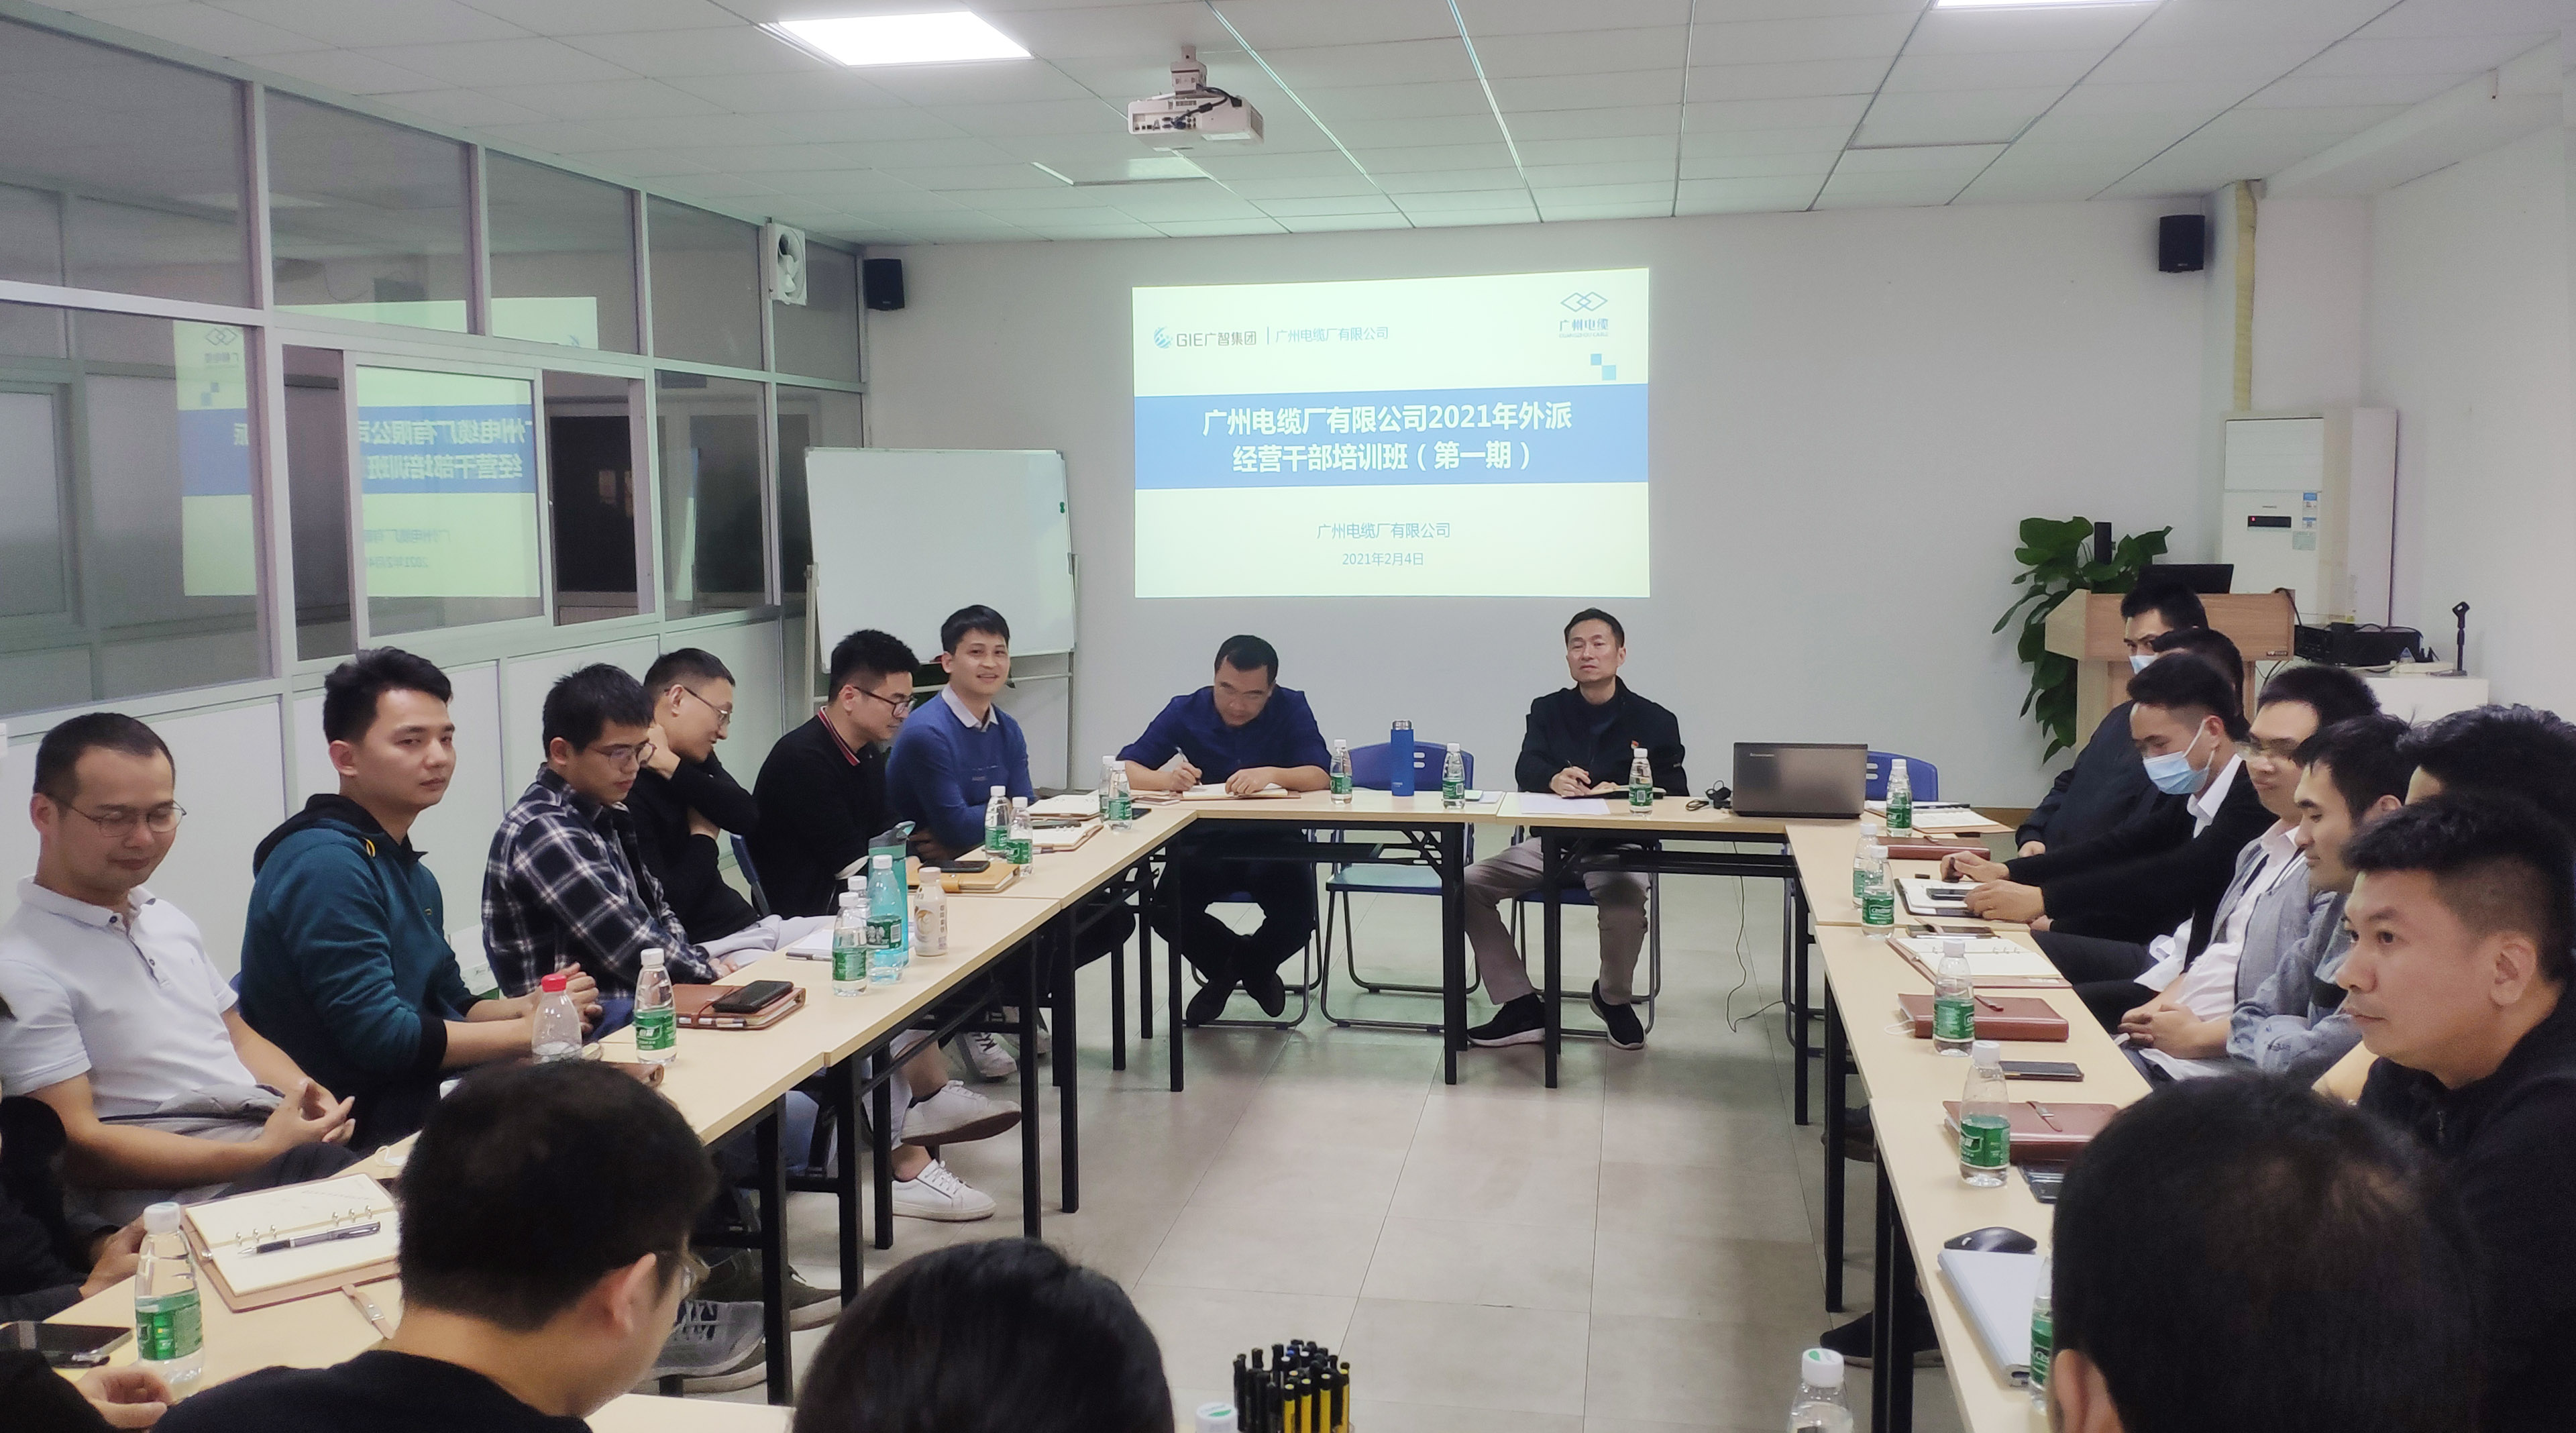 广州电缆第一期“外派经营干部培训班”成功举办